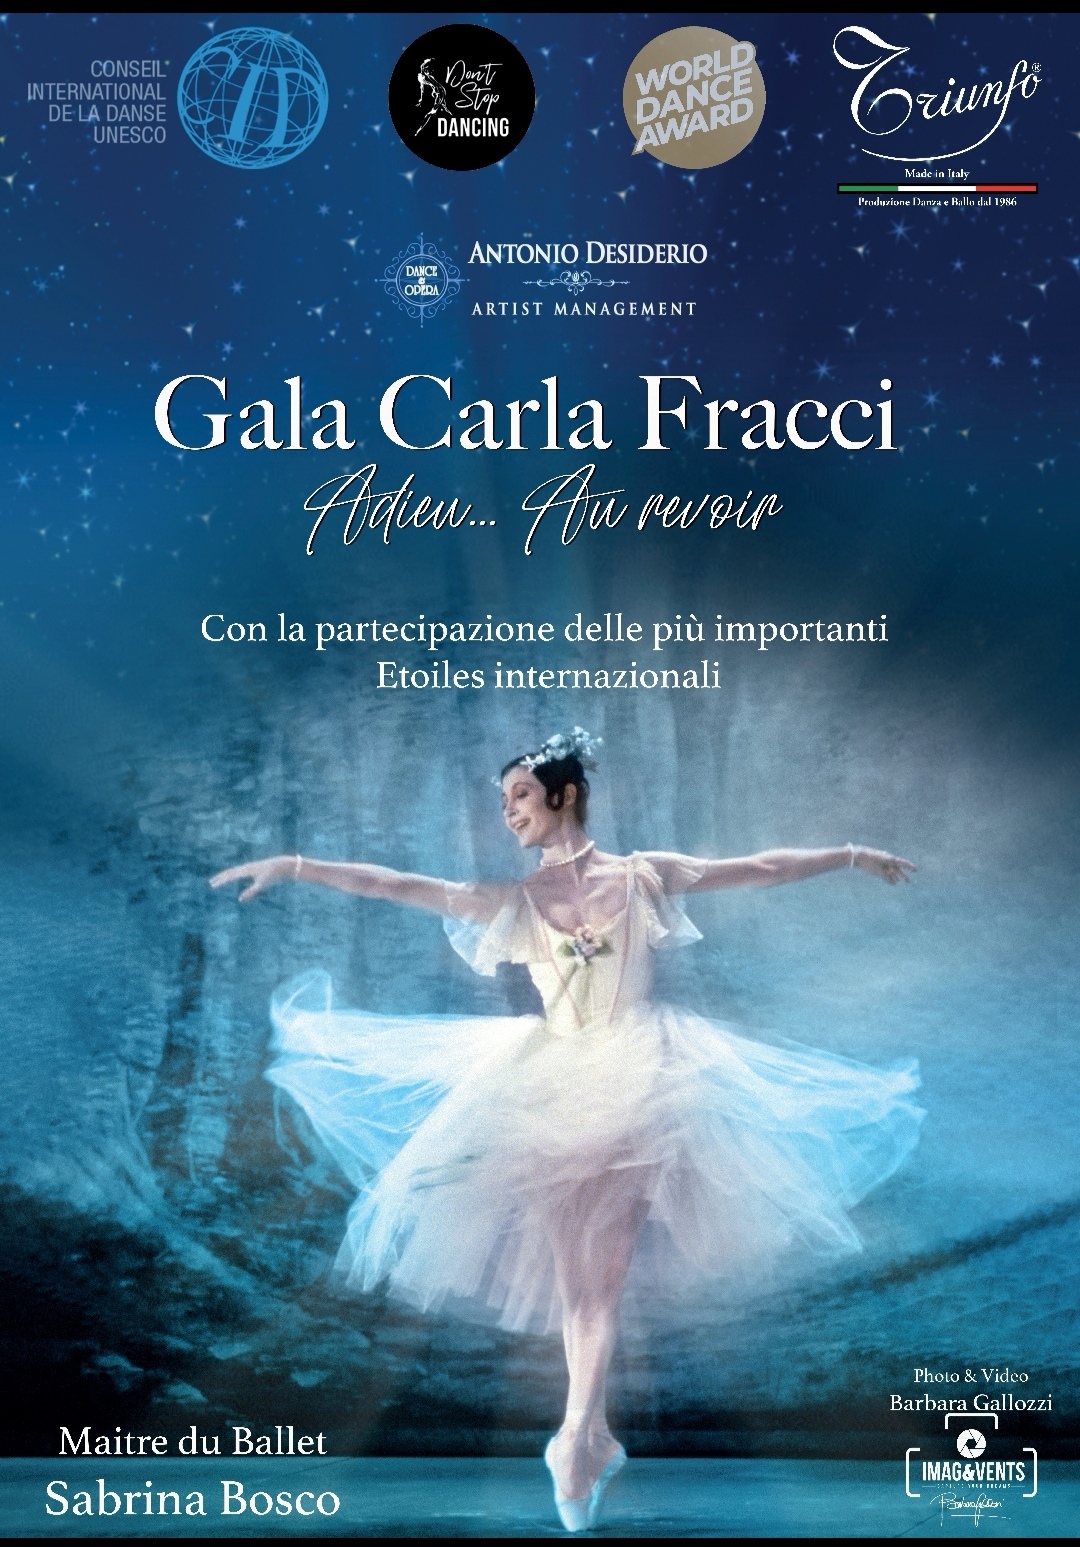 GALA CARLA FRACCI, Teatro Carcano di Milano